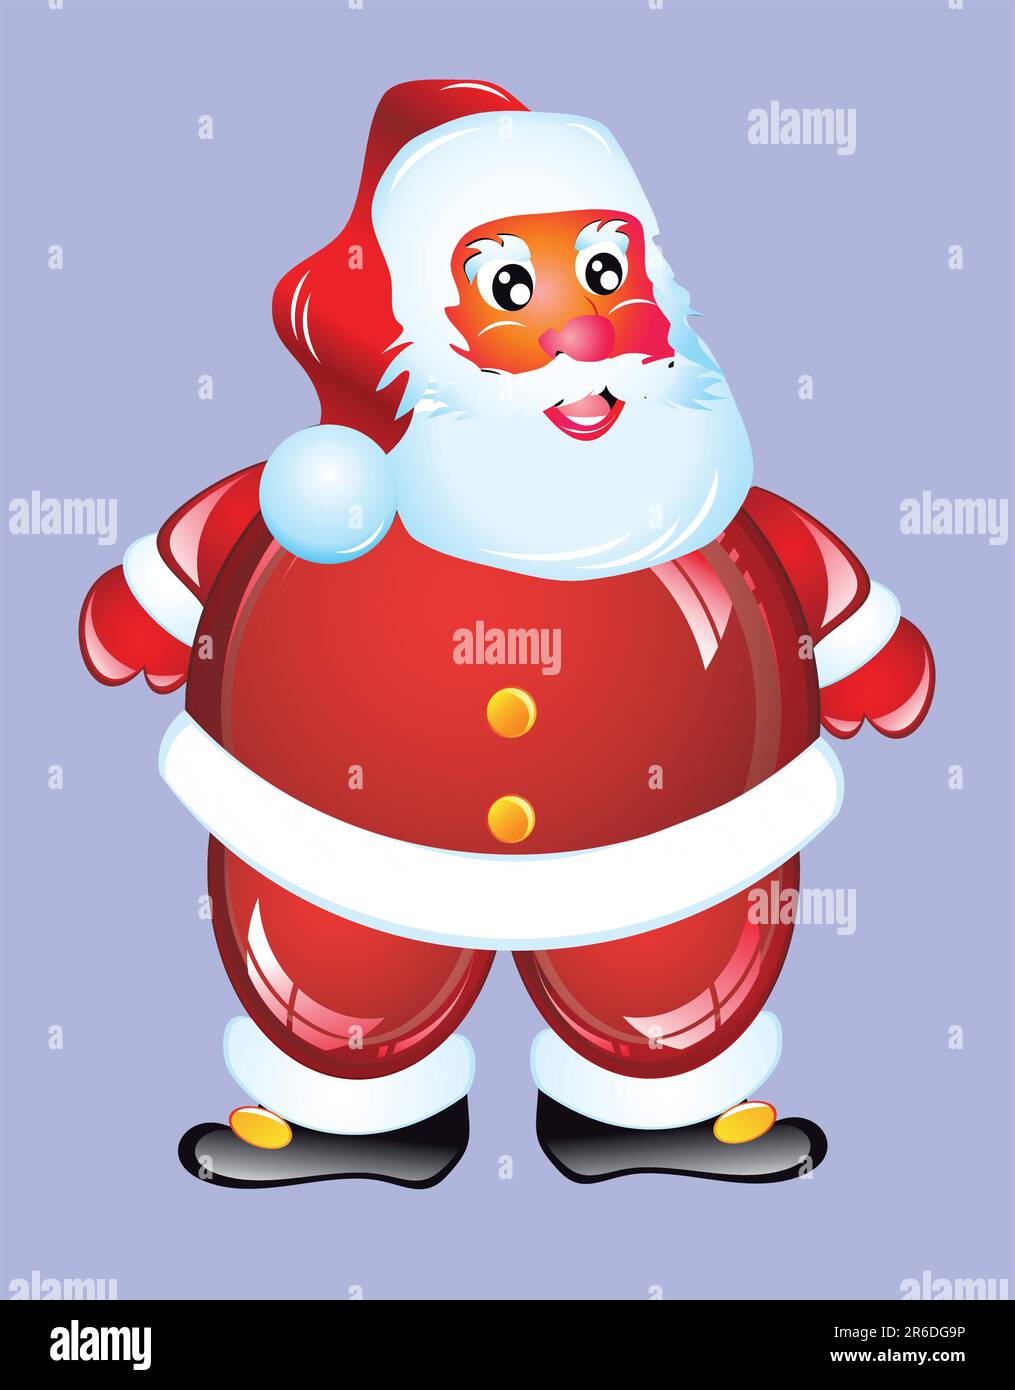 Style de dessin animé isolé du Père Noël avec robe rouge brillante Illustration de Vecteur